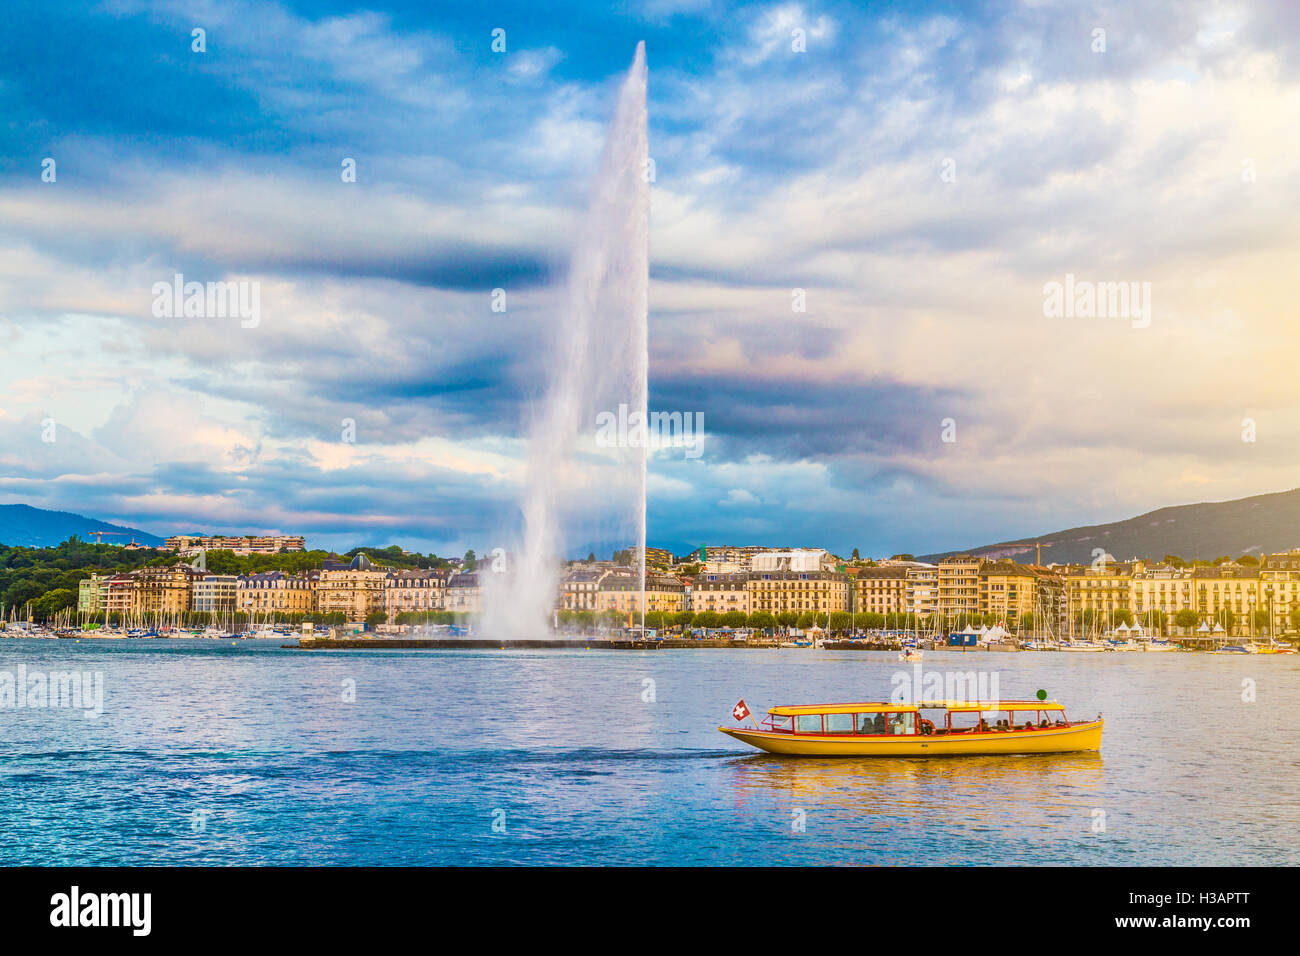 La vue classique du skyline de Genève avec le célèbre Jet d'eau au lac de Genève en belle lumière du soir au coucher du soleil, Suisse Banque D'Images